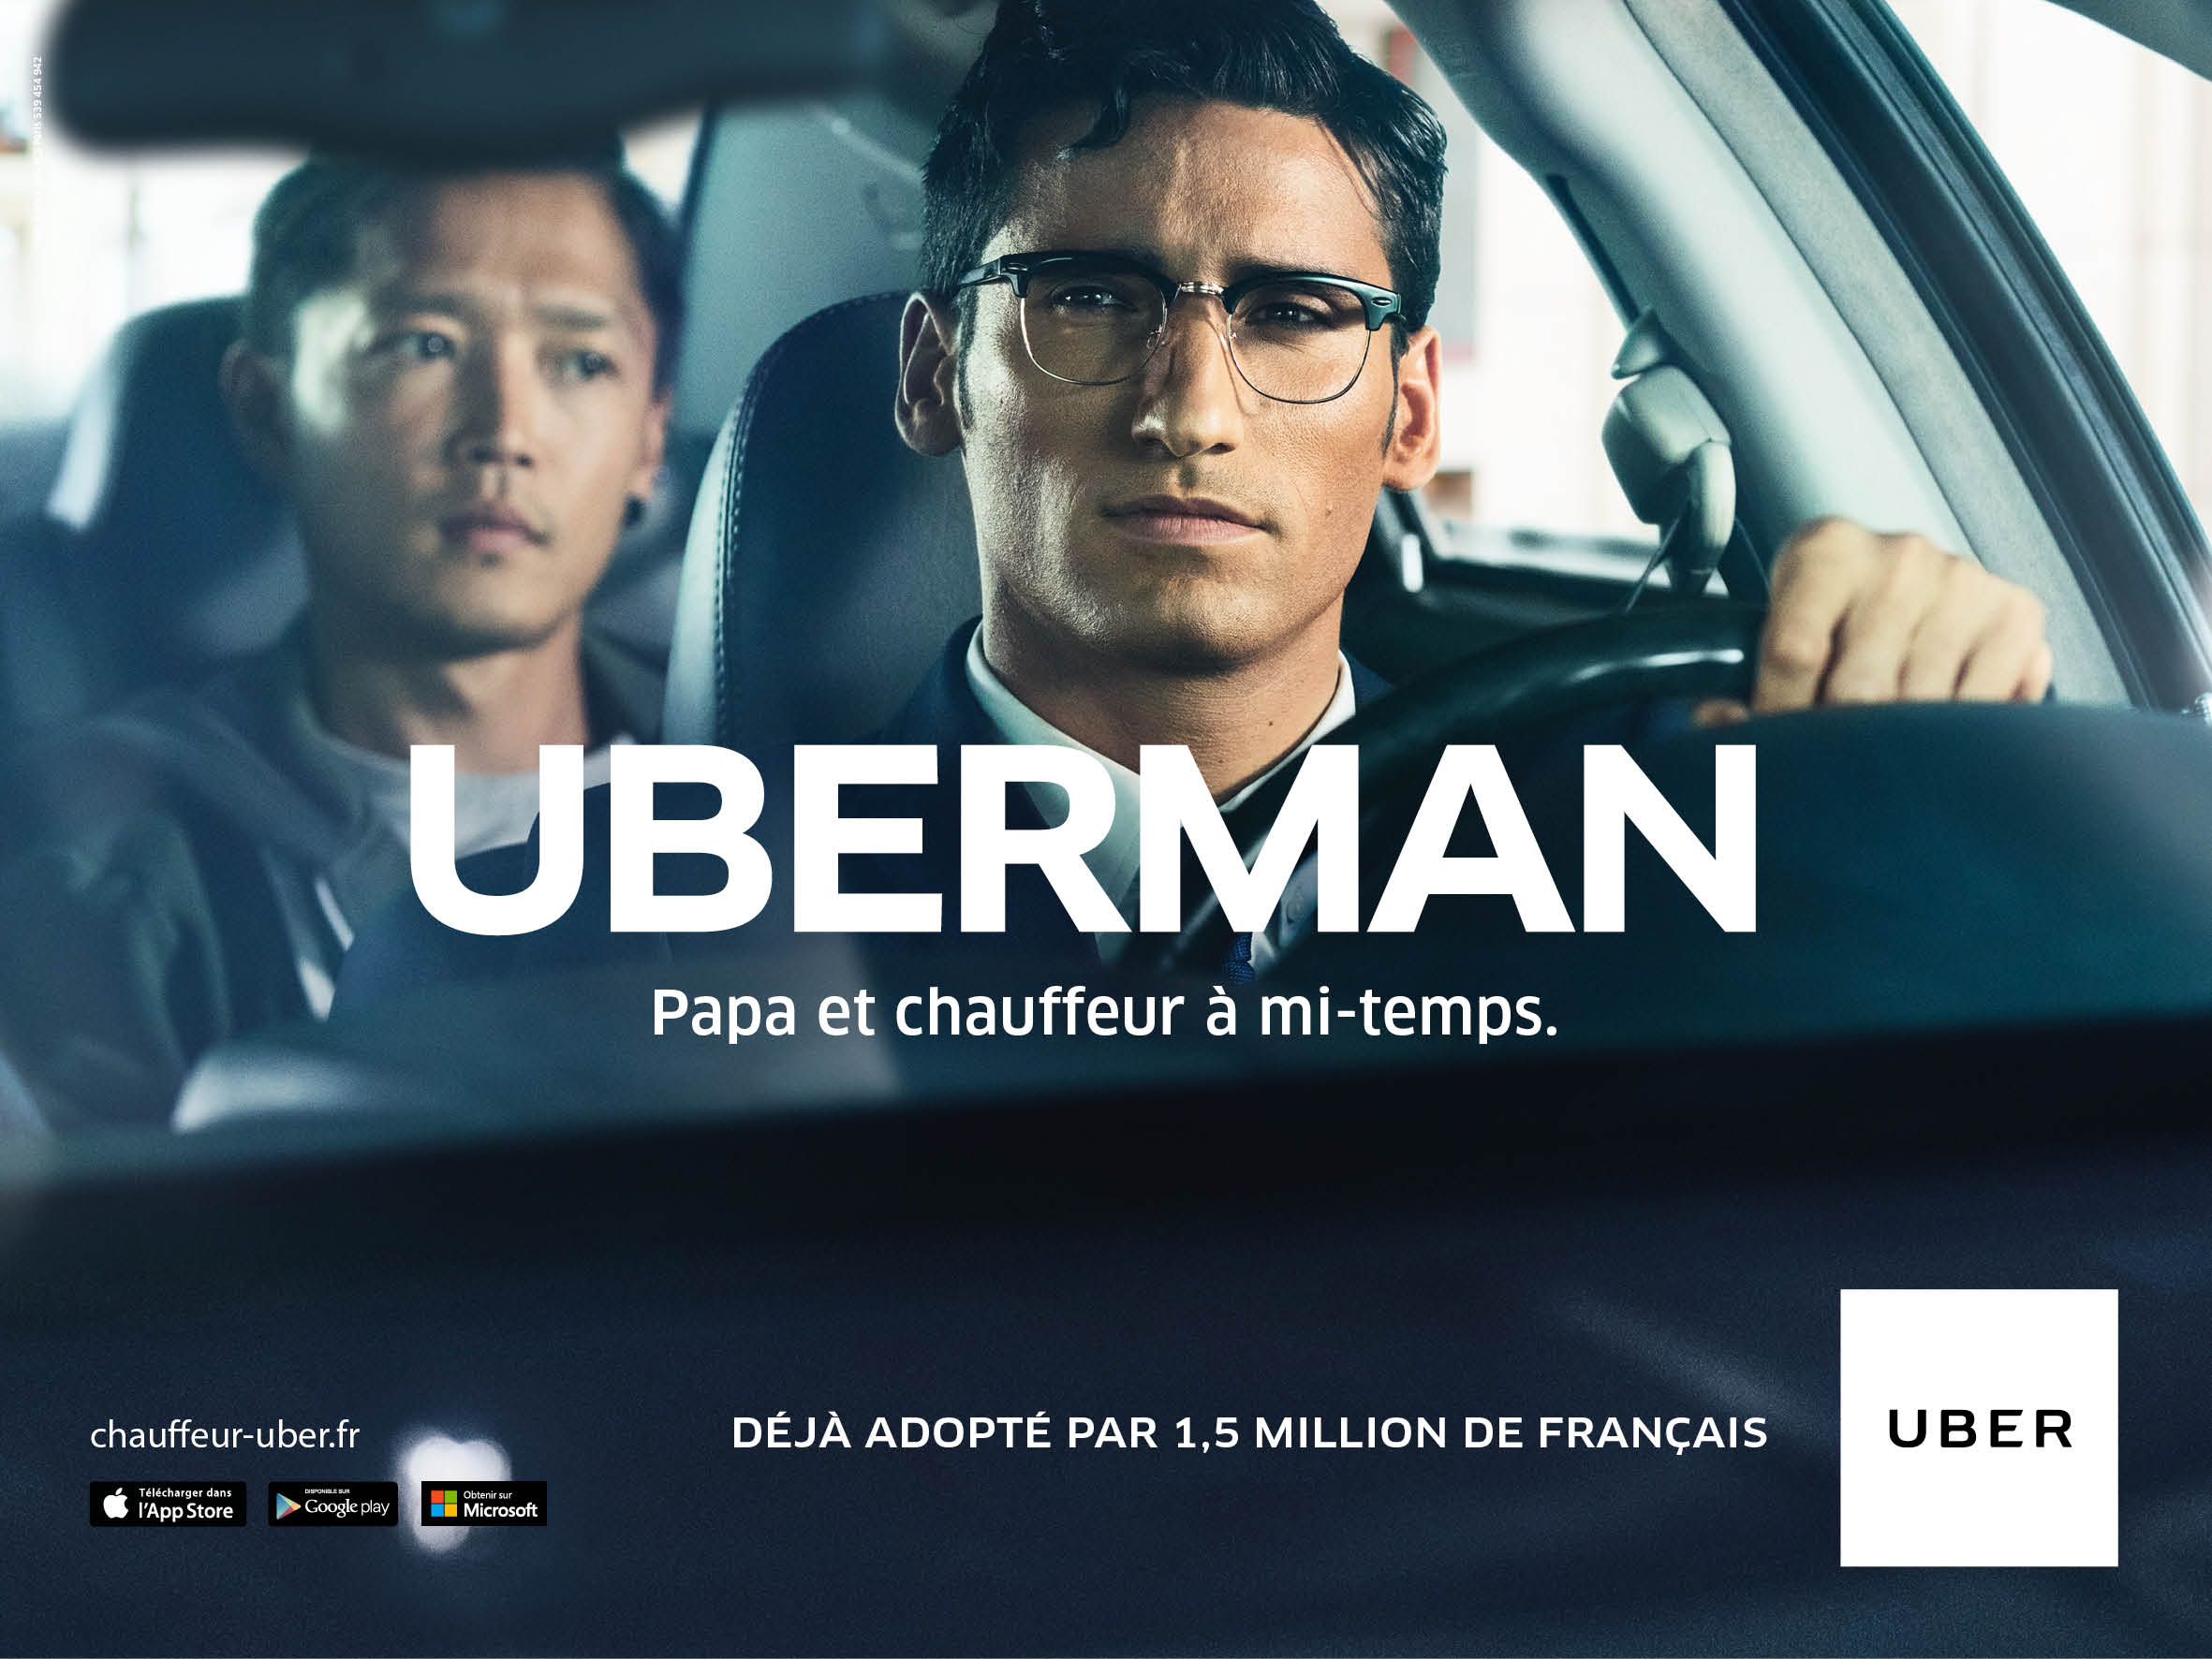 uber-france-publicite-marketing-recrutement-chauffeurs-partenaires-mars-2016-agence-marcel-publicis-3